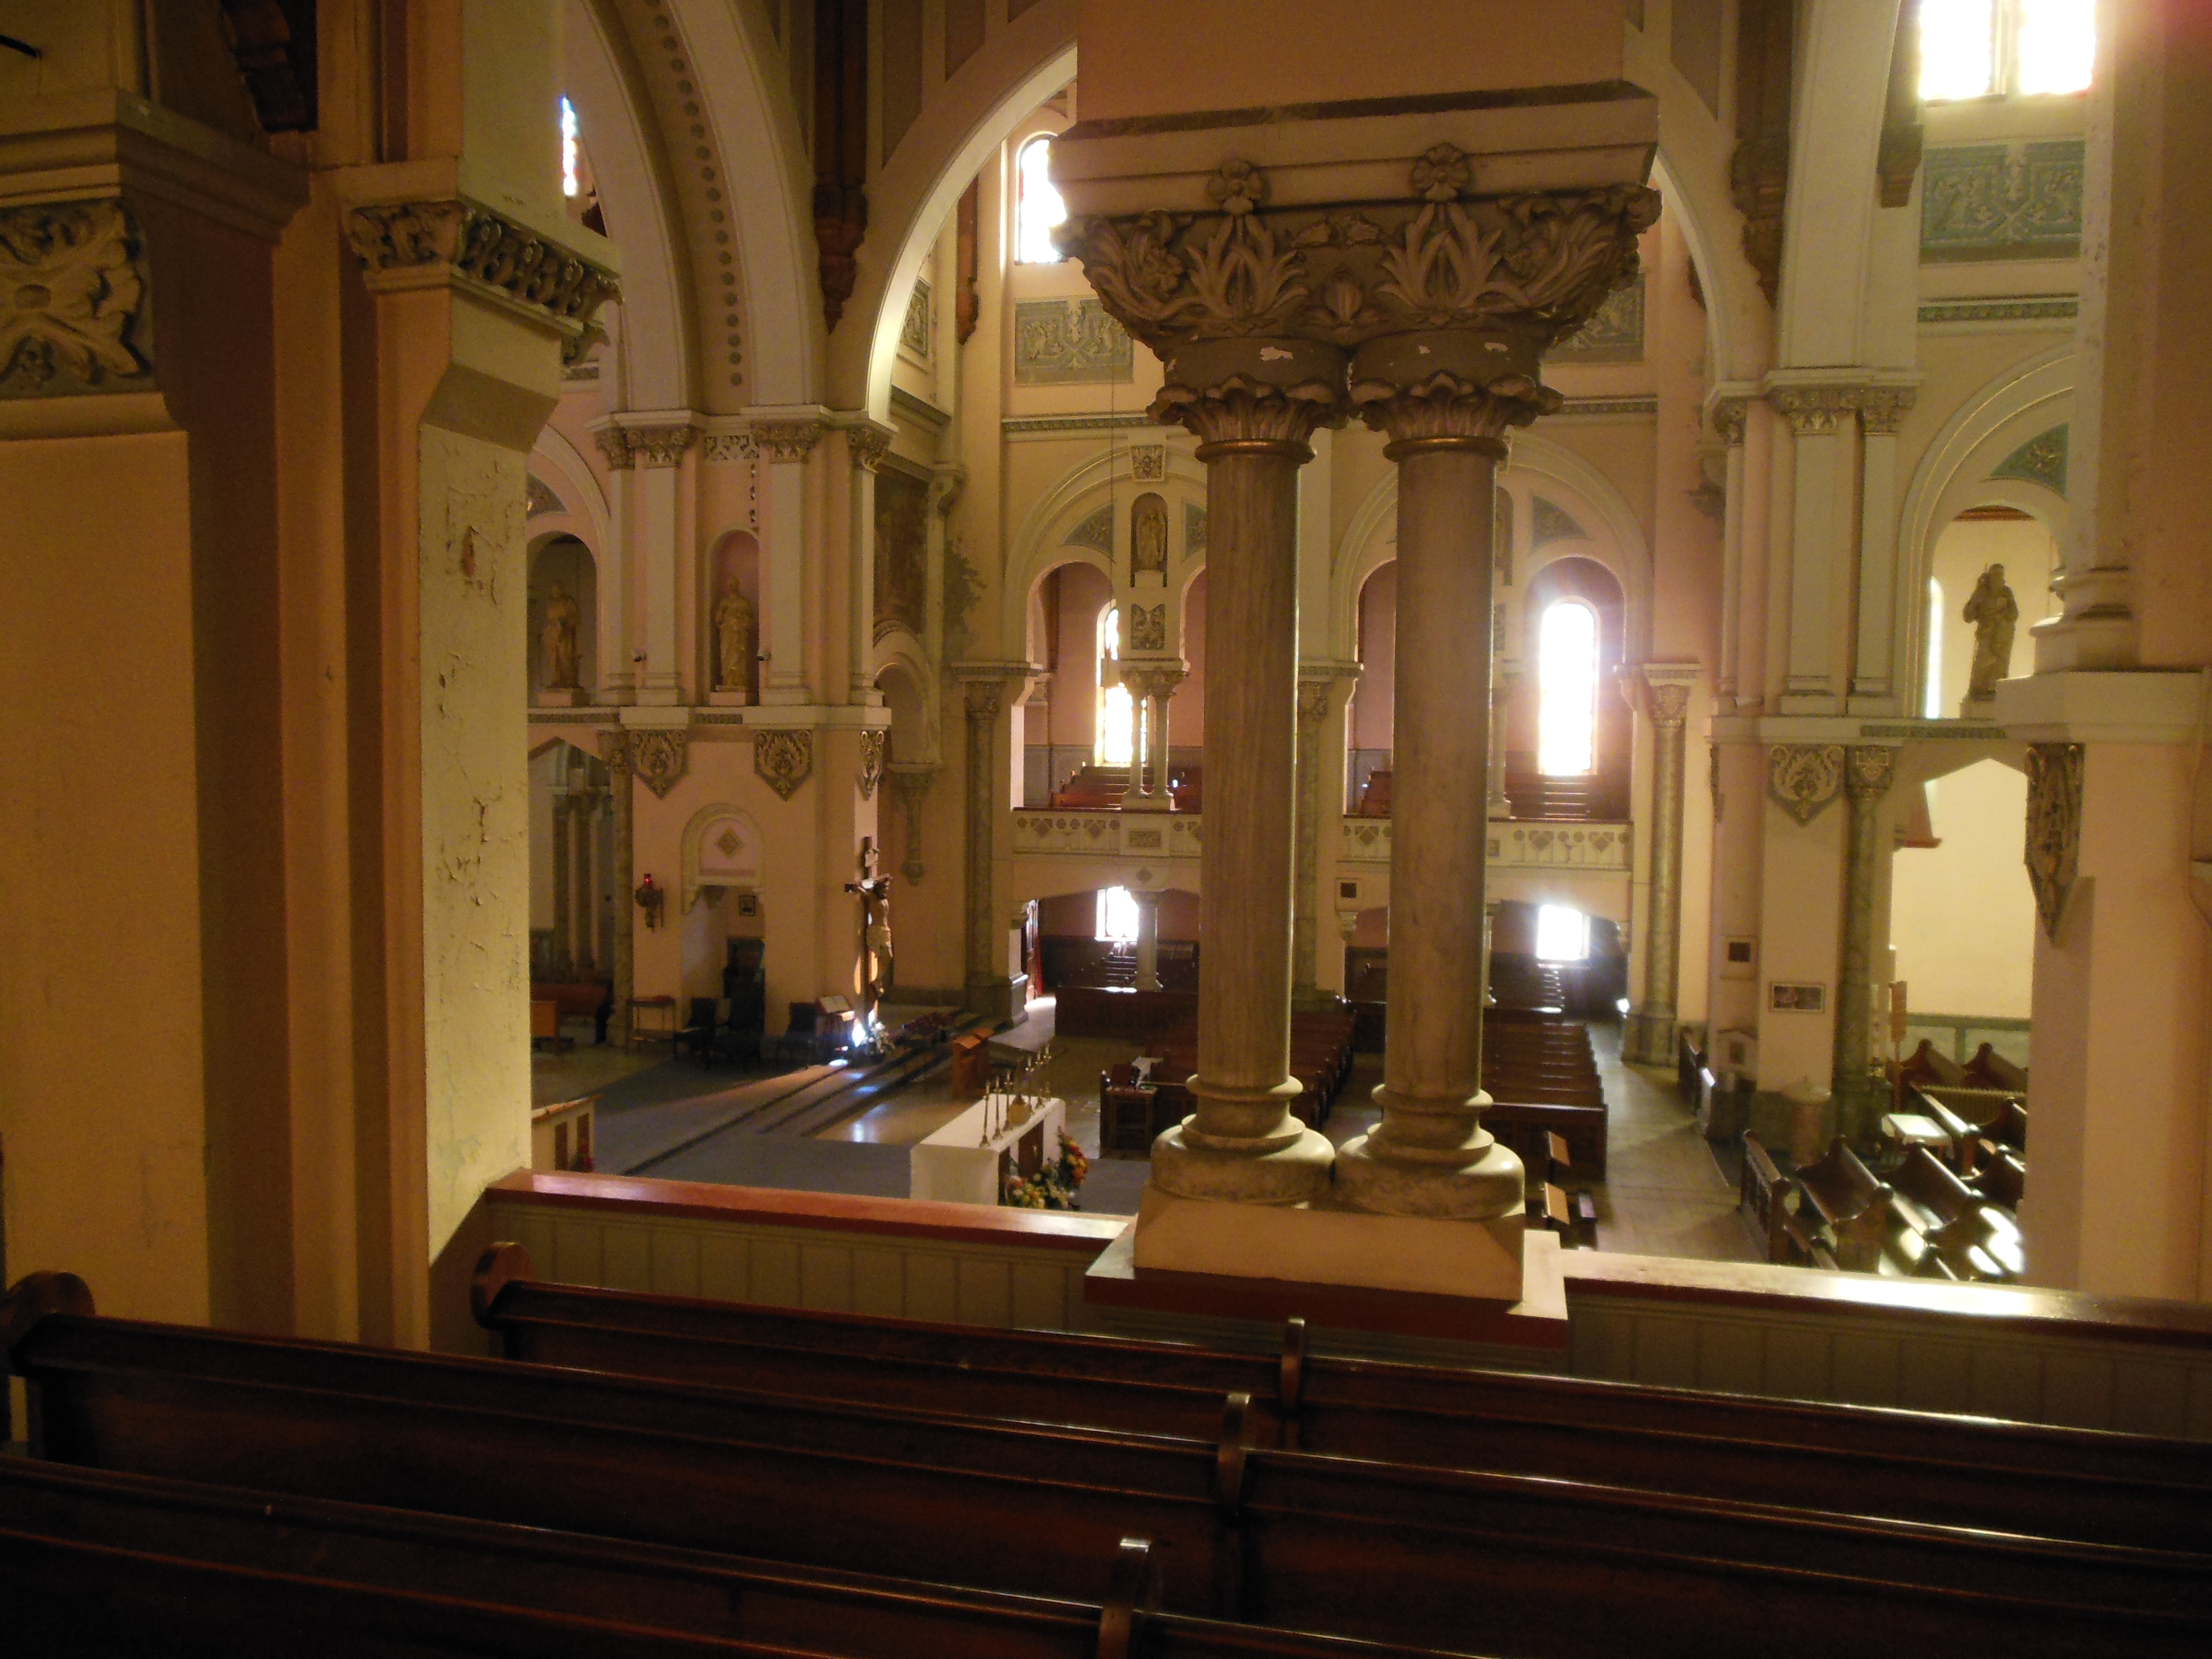 Inside the church | Saint Anne's Parish